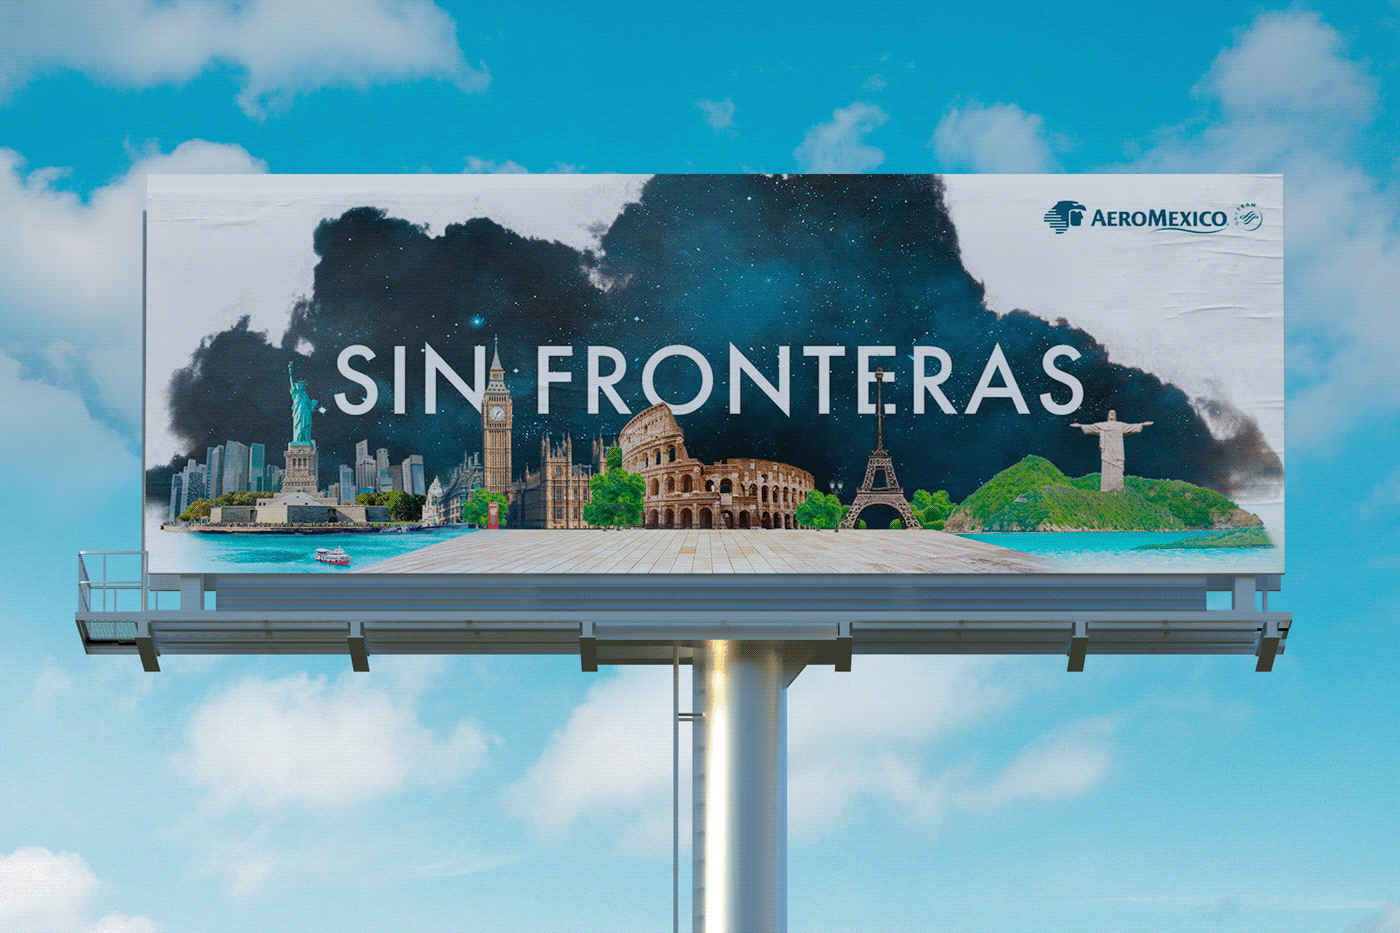 Aeromexico mexico flight airline worldwide trip Travel aerolinea Btl publicidad